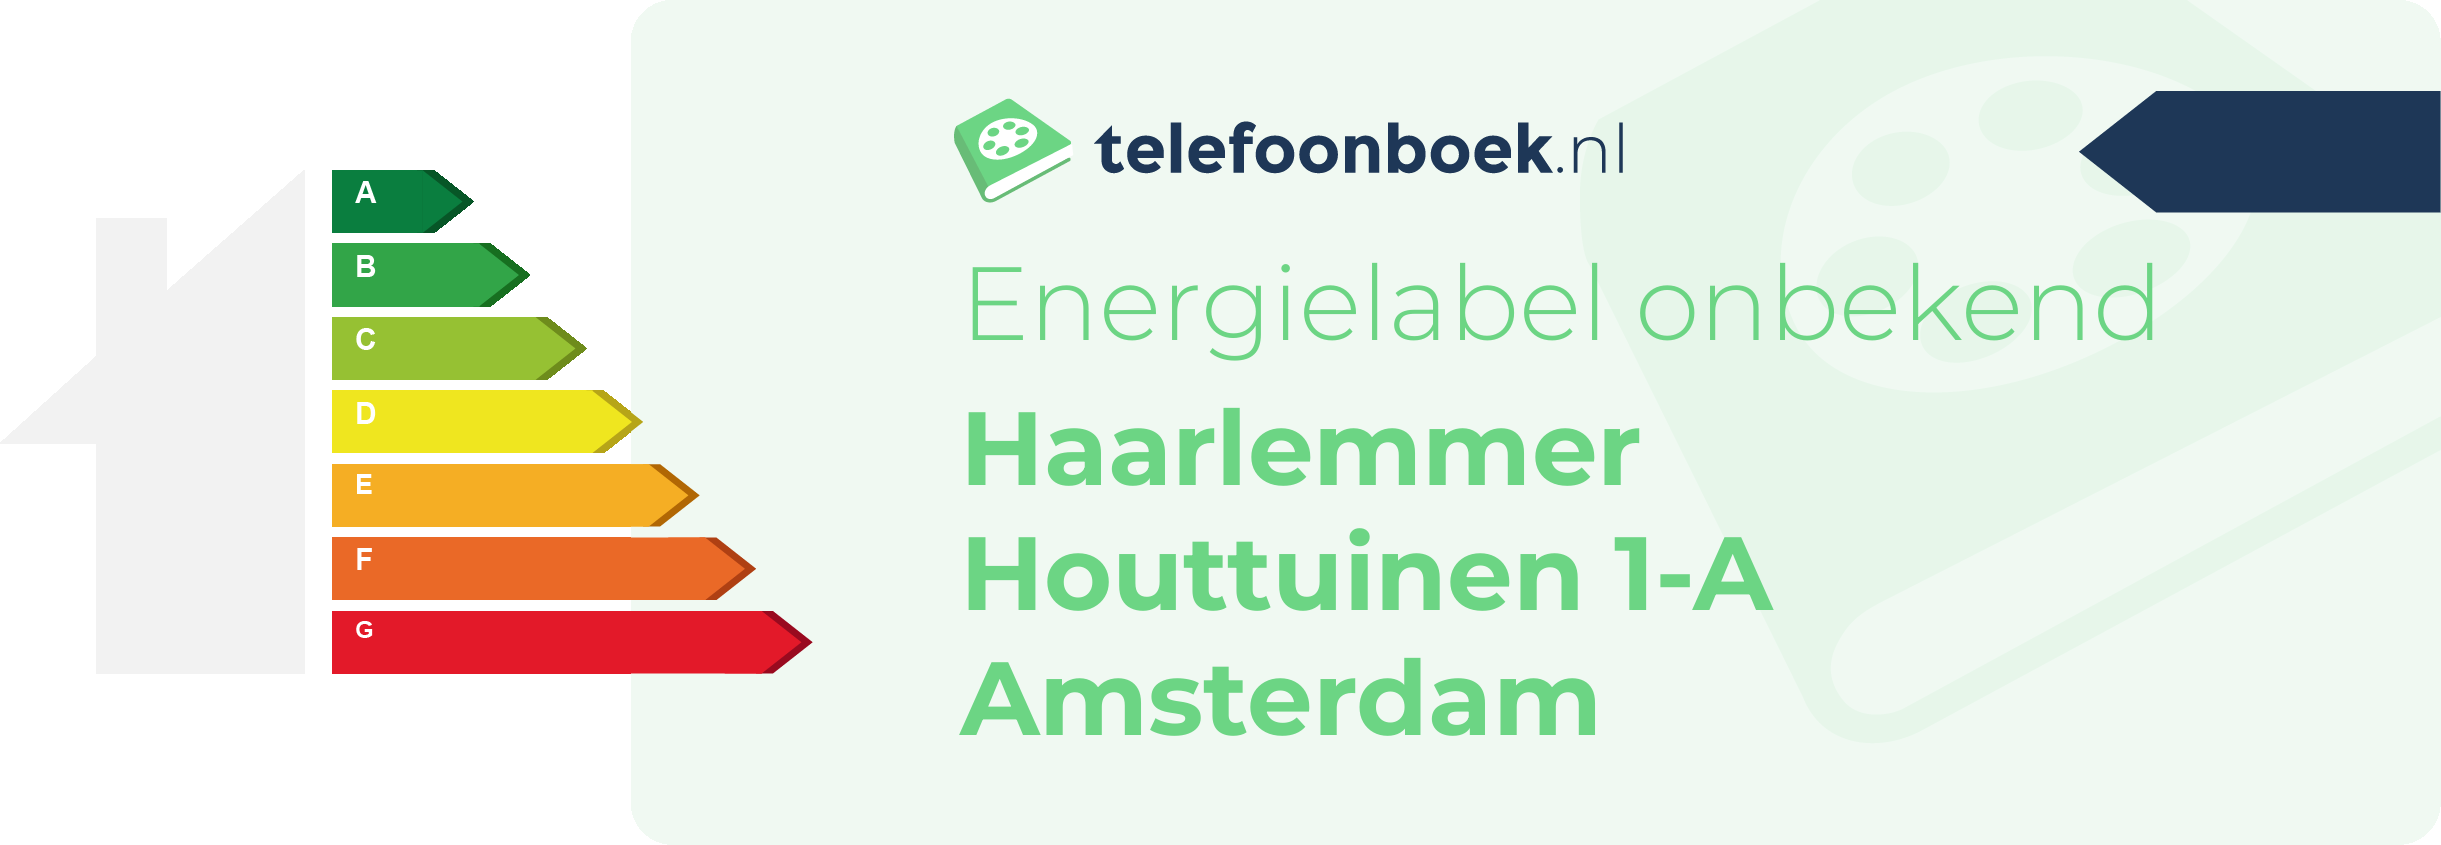 Energielabel Haarlemmer Houttuinen 1-A Amsterdam